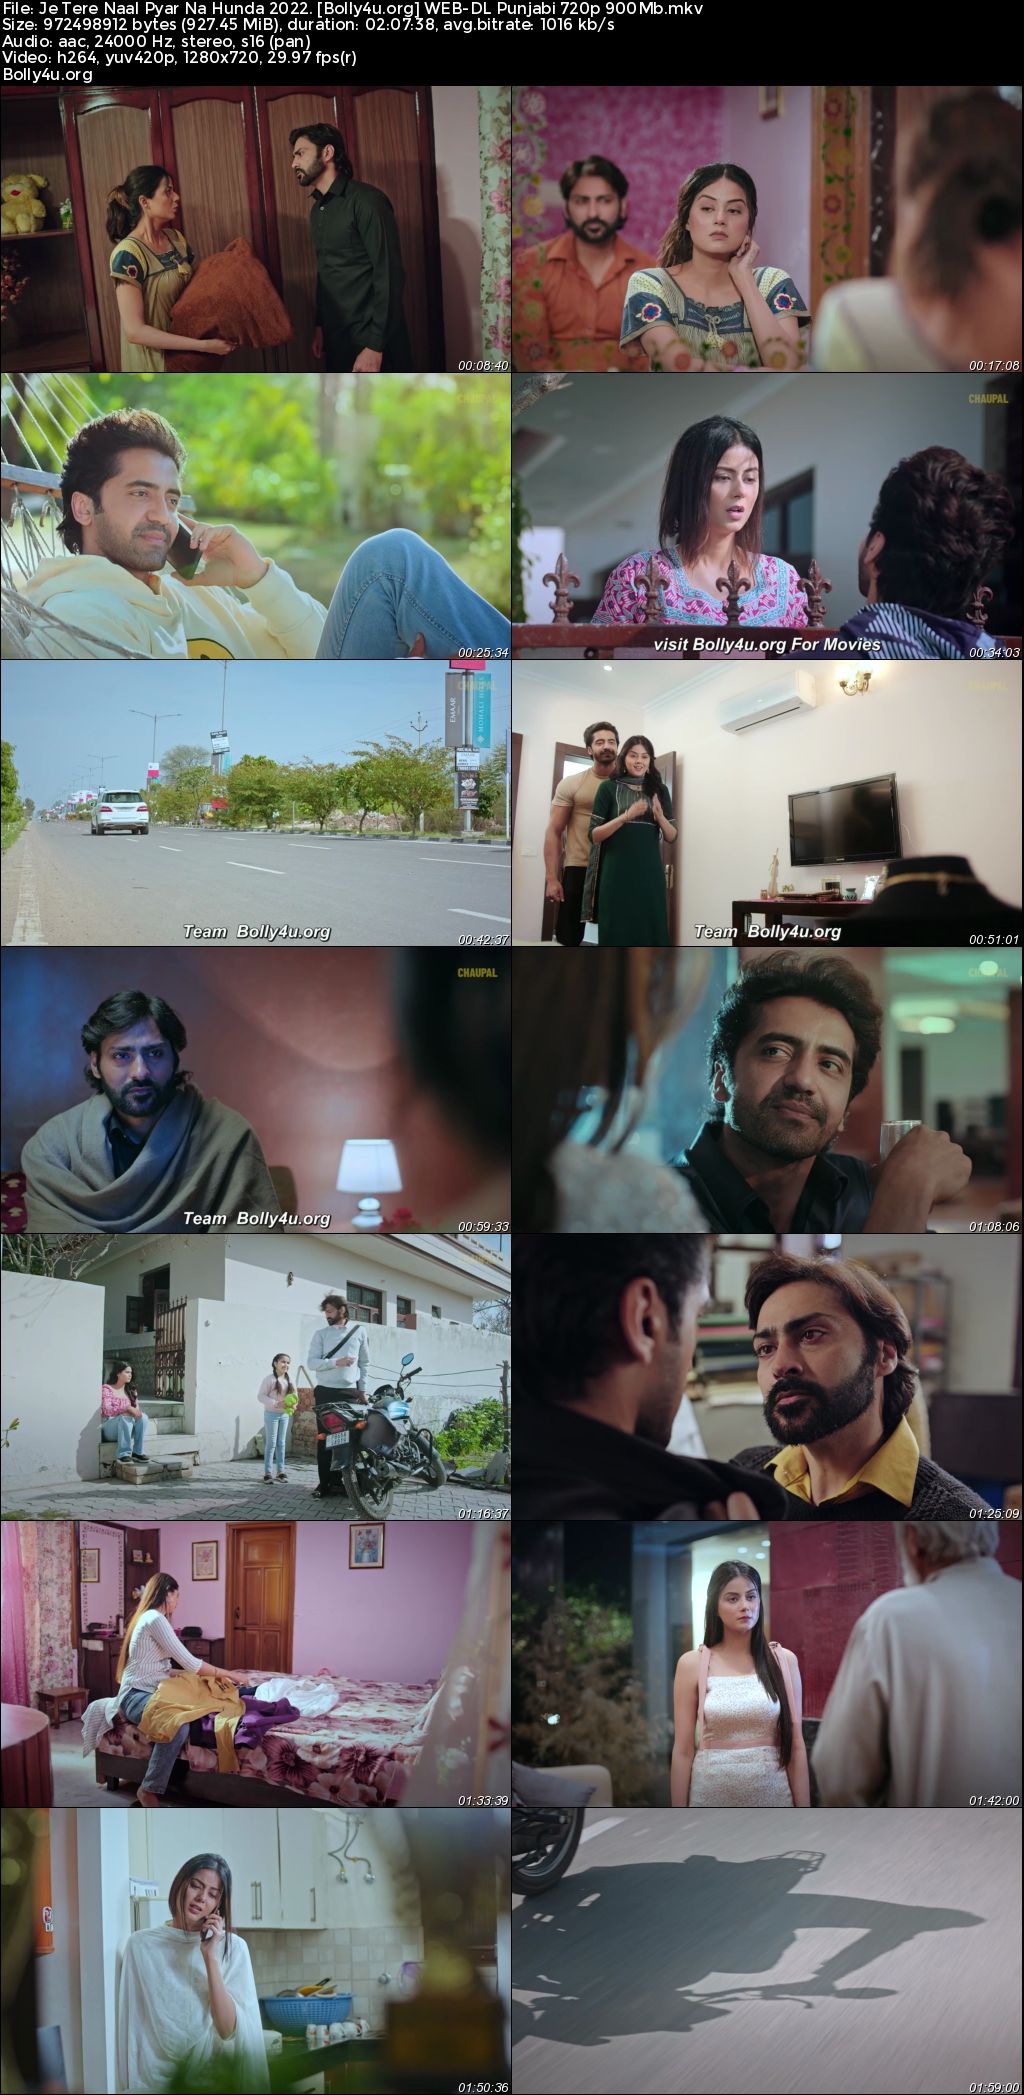 Je Tere Naal Pyar Na Hunda 2022 WEB-DL Punjabi Full Movie Download 1080p 720p 480p